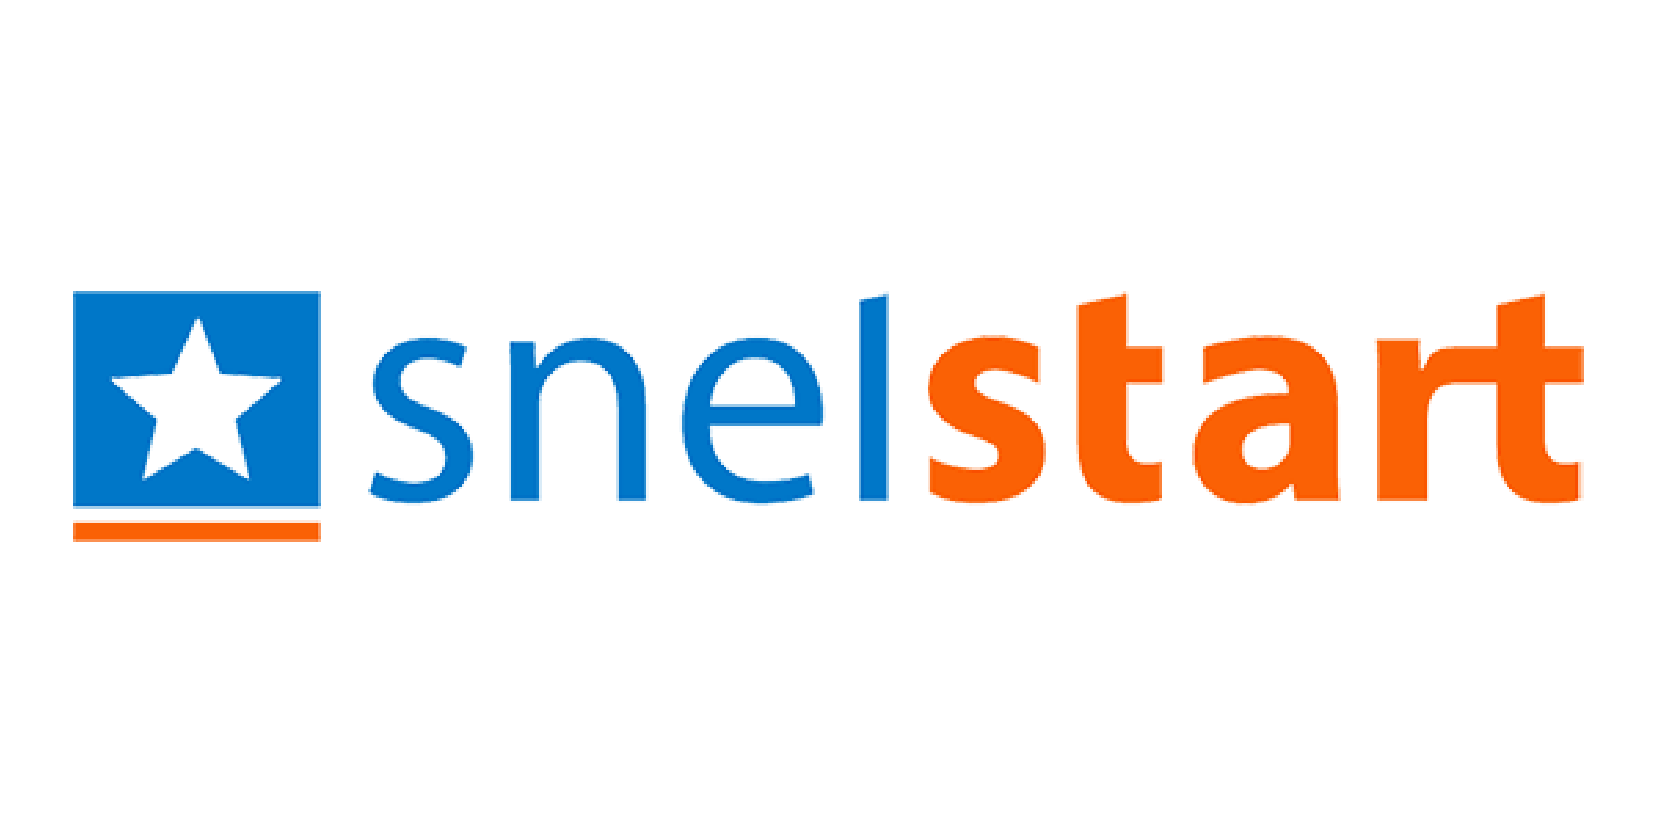 Logo Snelstart